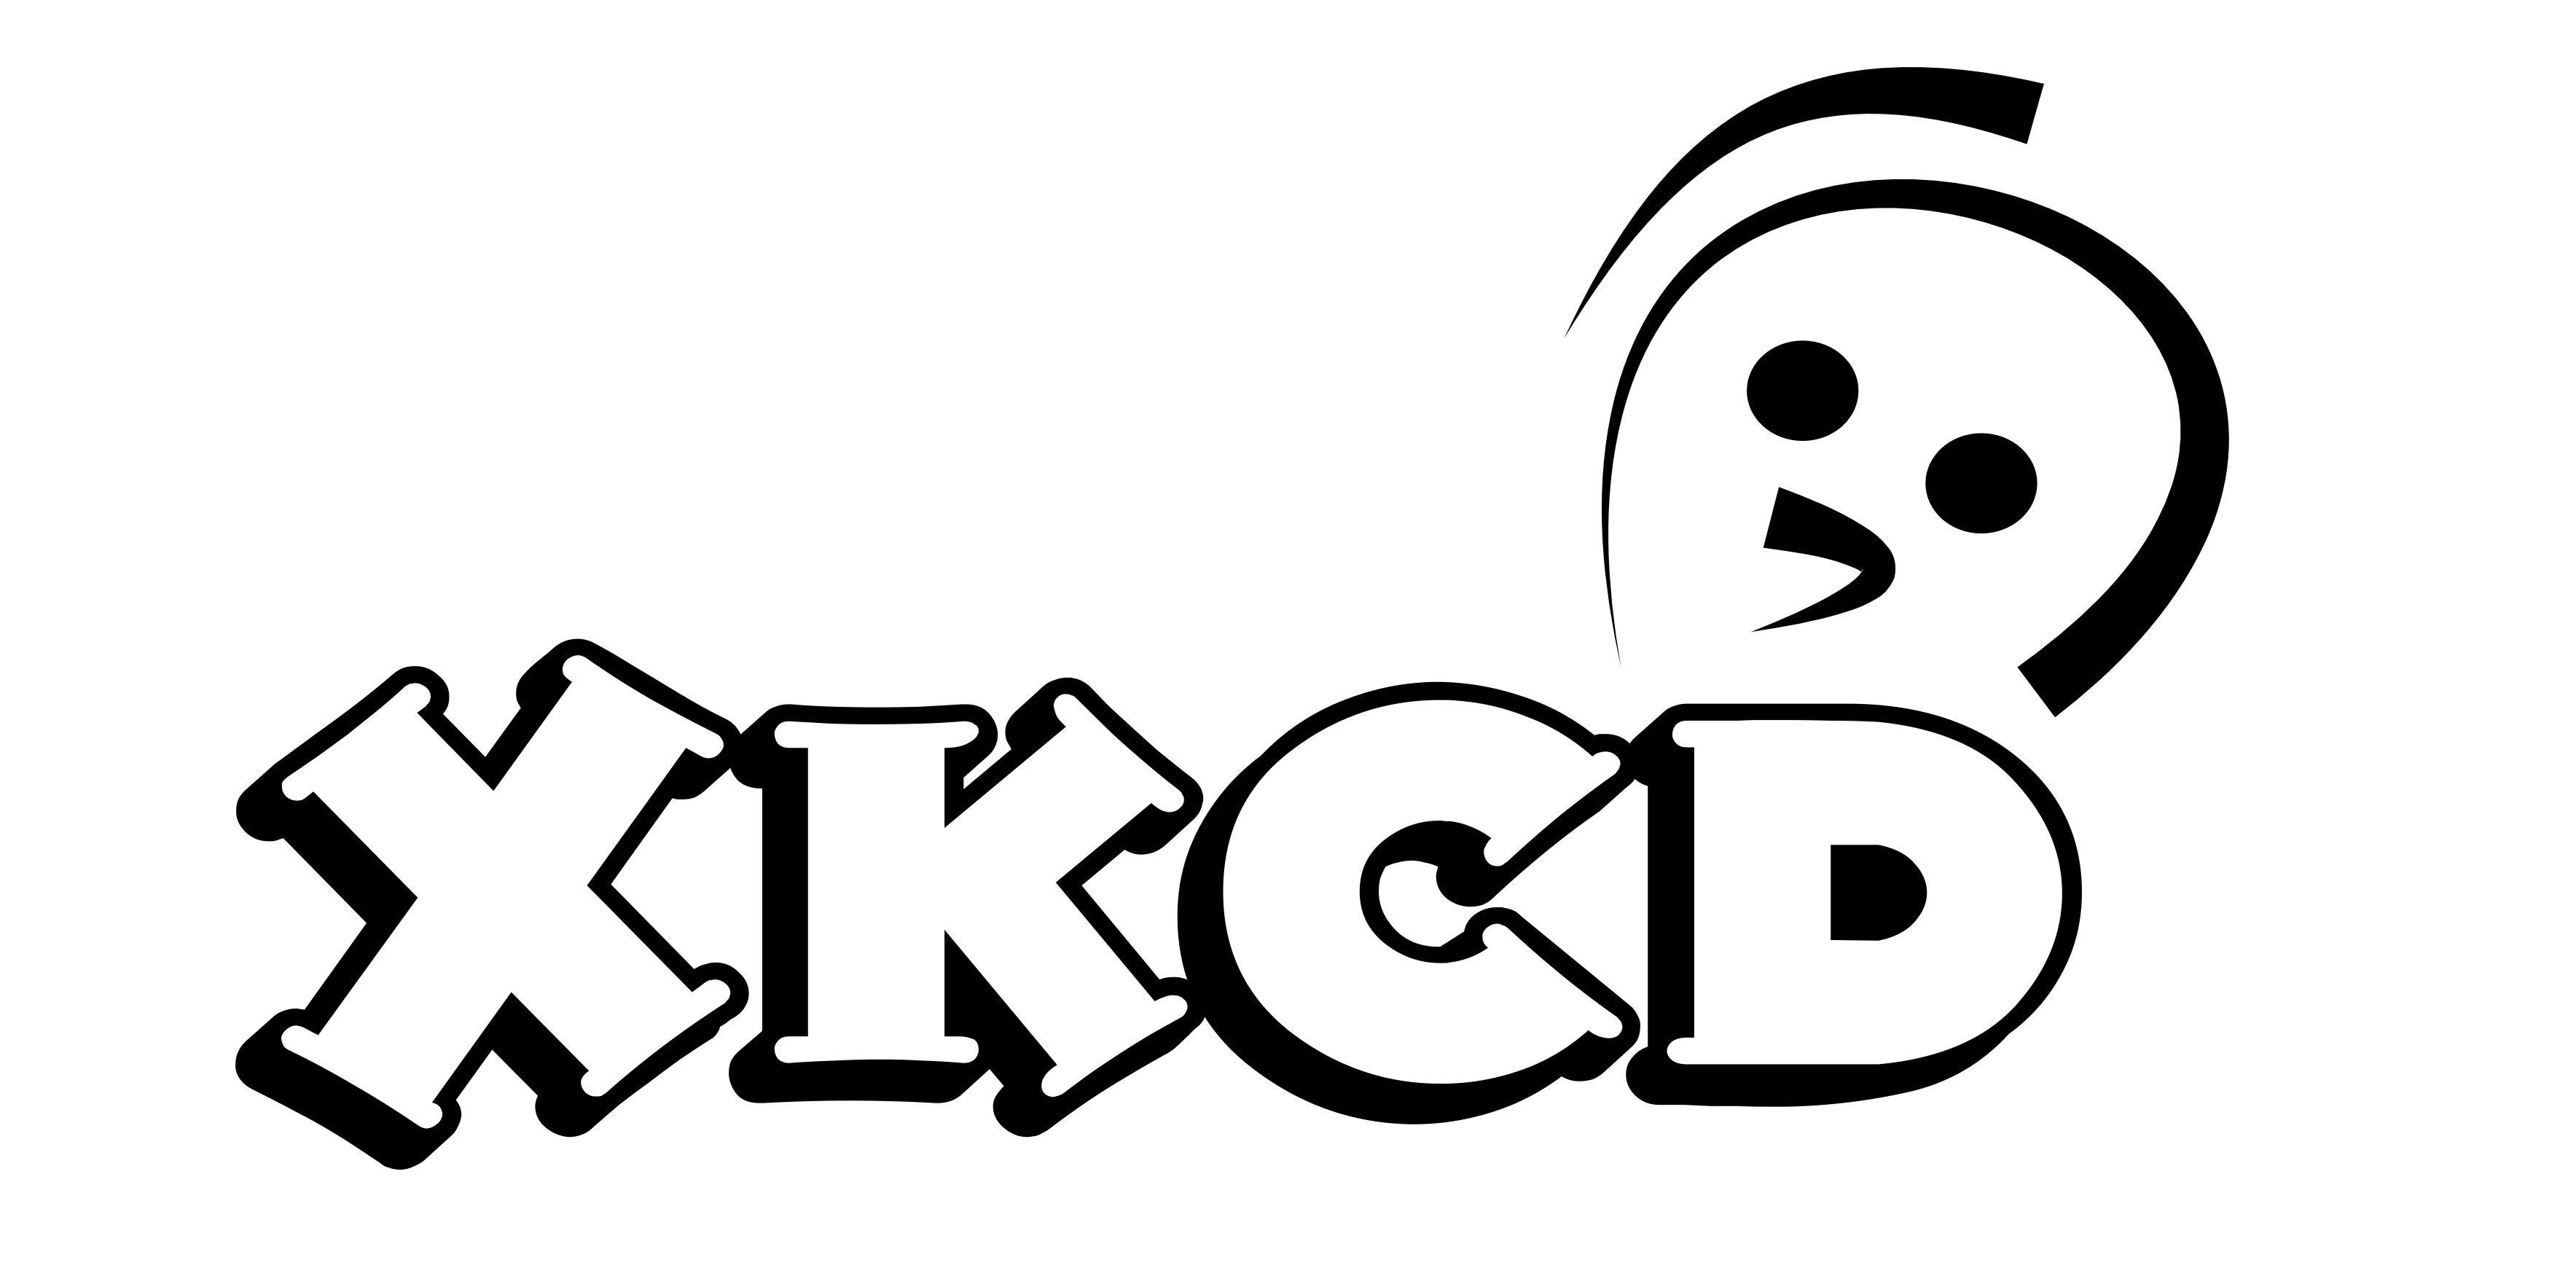 xkcd-comics